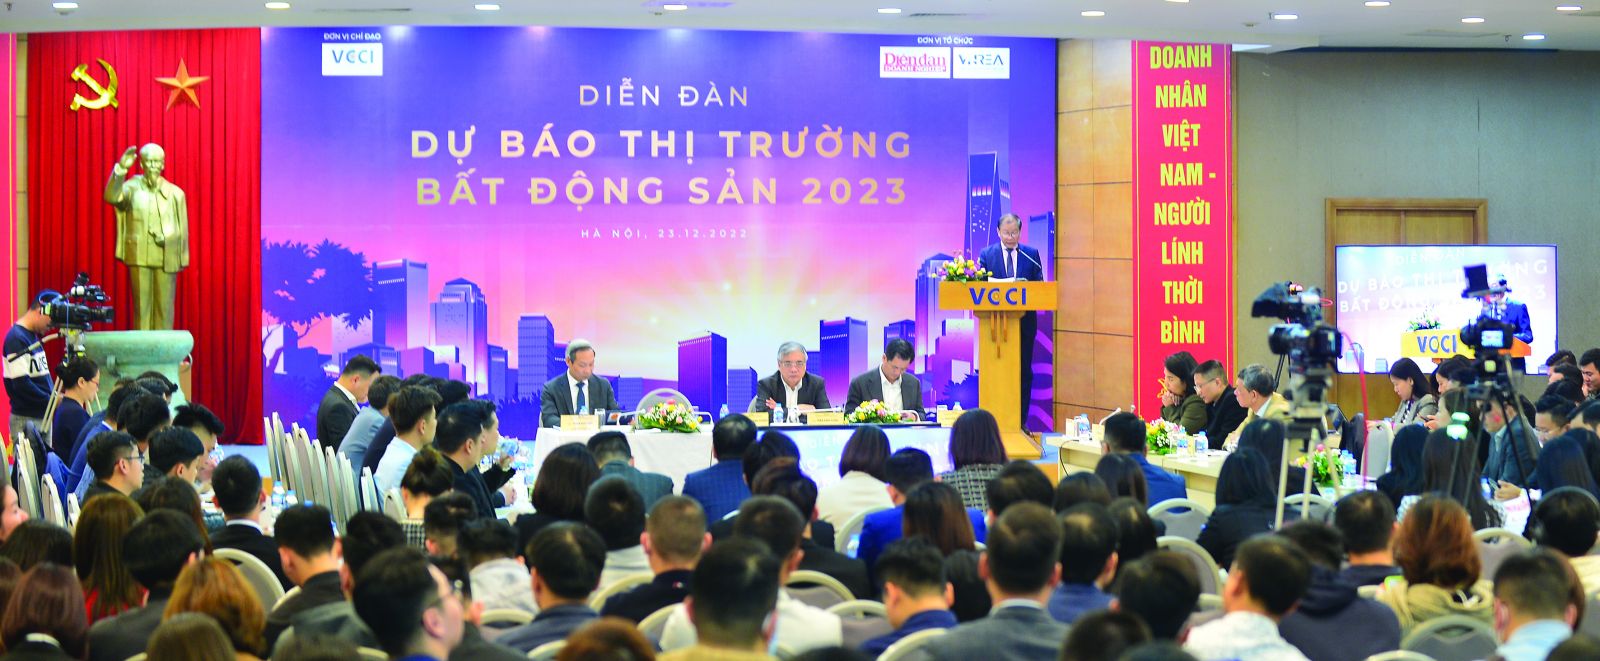  Diễn đàn “Dự báo thị trường bất động sản 2023” do Tạp chí Diễn đàn Doanh nghiệp phối hợp với Hiệp hội bất động sản Việt Nam tổ chức.